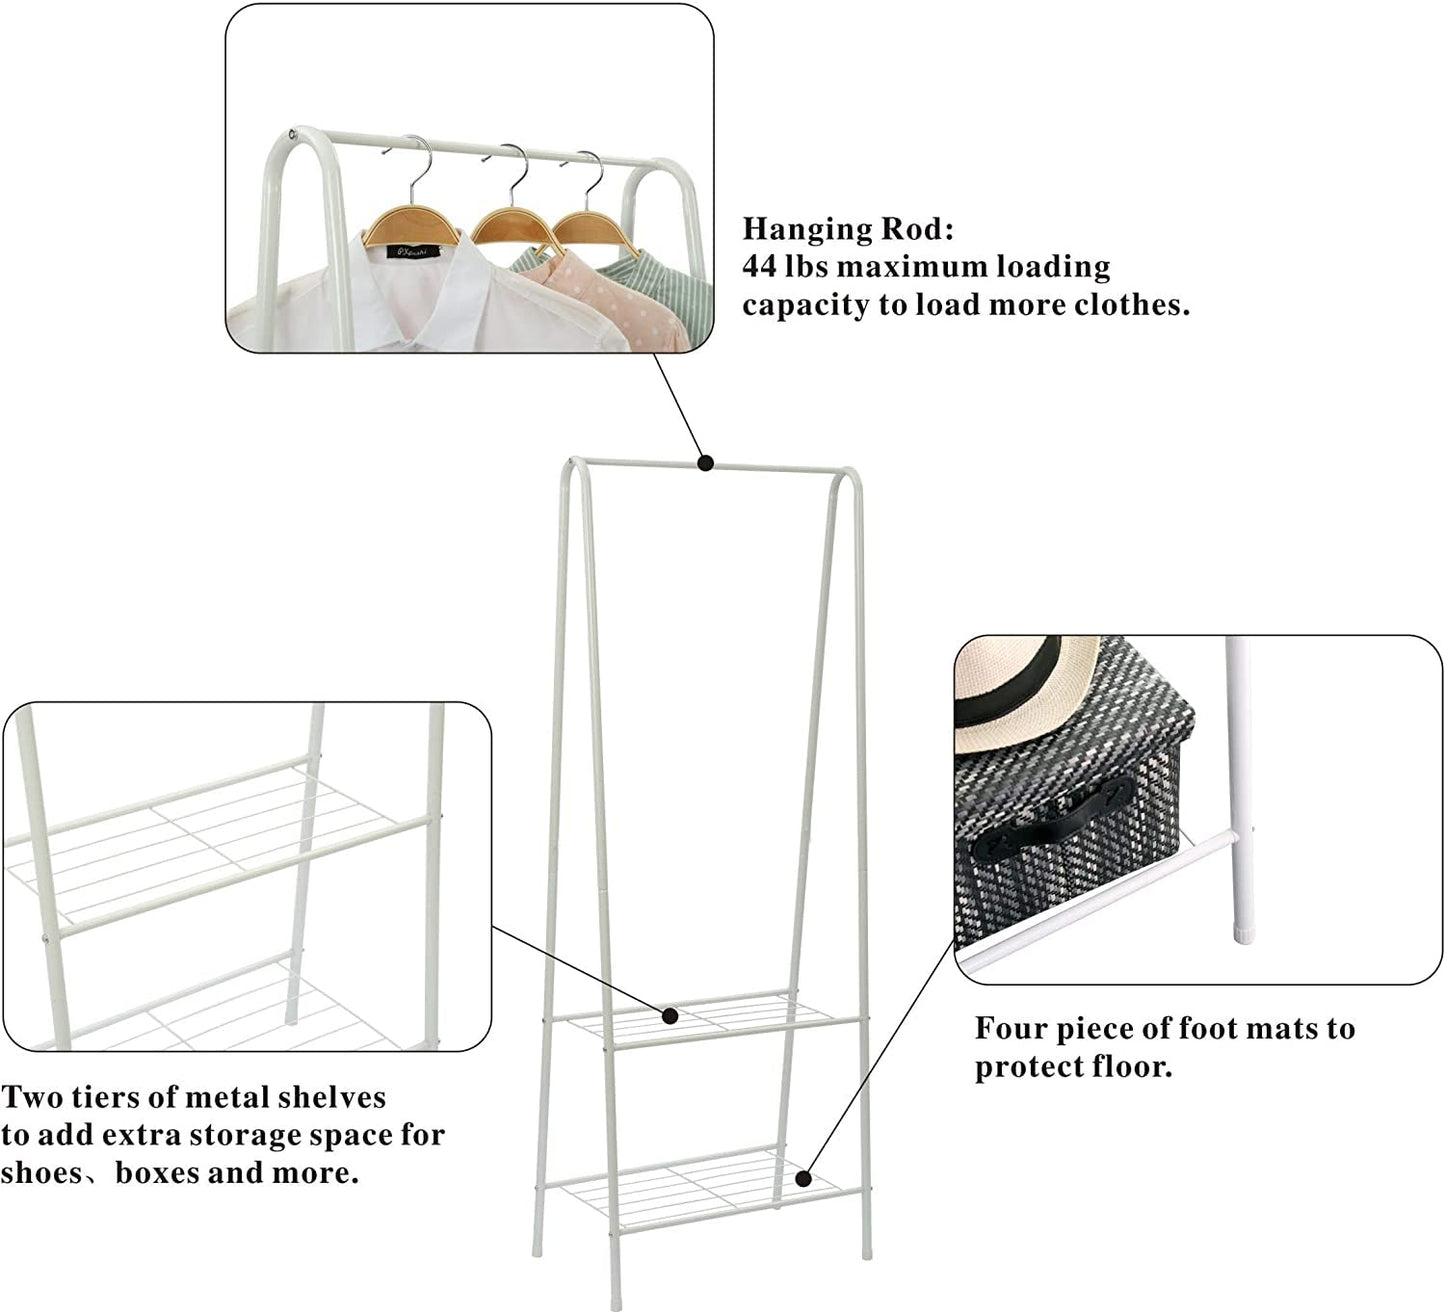 Storage Shelves Wrought Iron Coat Rack Floor Hanger Sleek Minimalist Creative Clothes Rack Bedroom Hanger Rack (White)